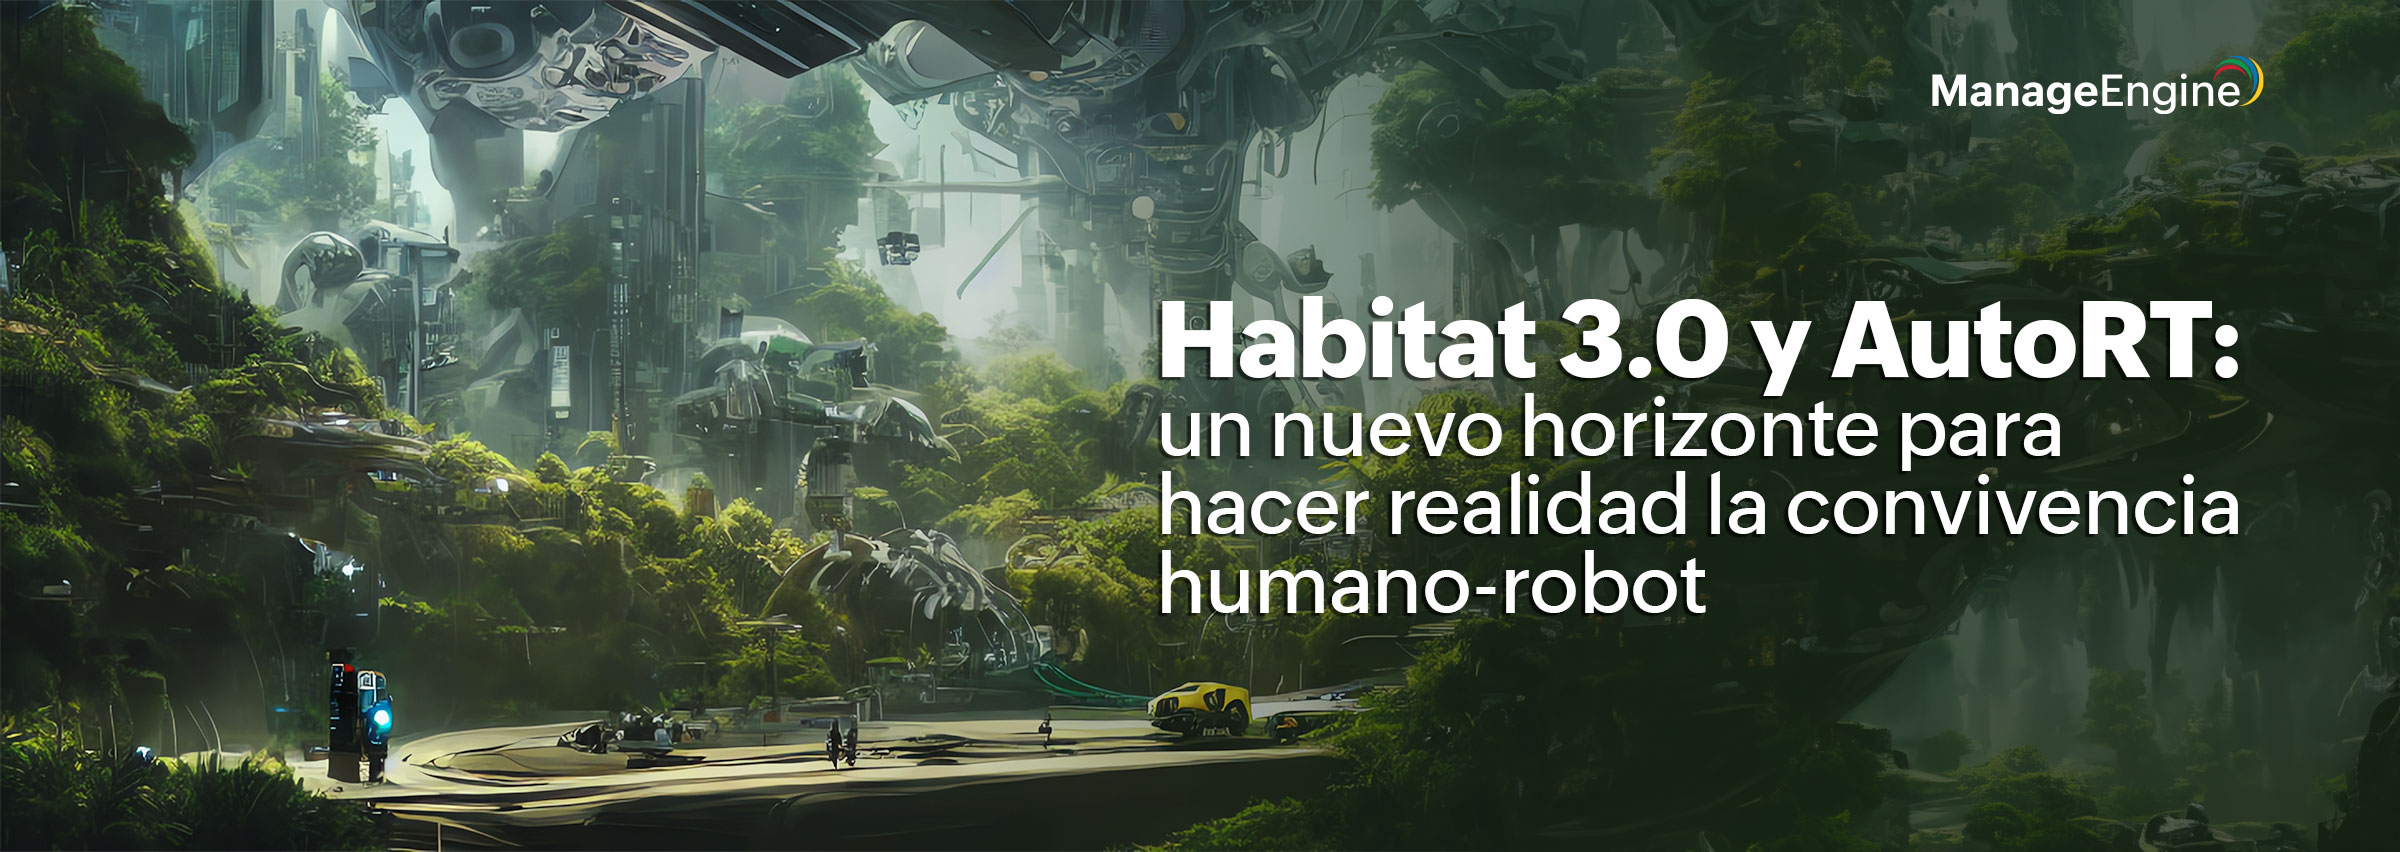 Habitat 3.0 y AutoRT: un nuevo horizonte para hacer realidad la convivencia humano-robot